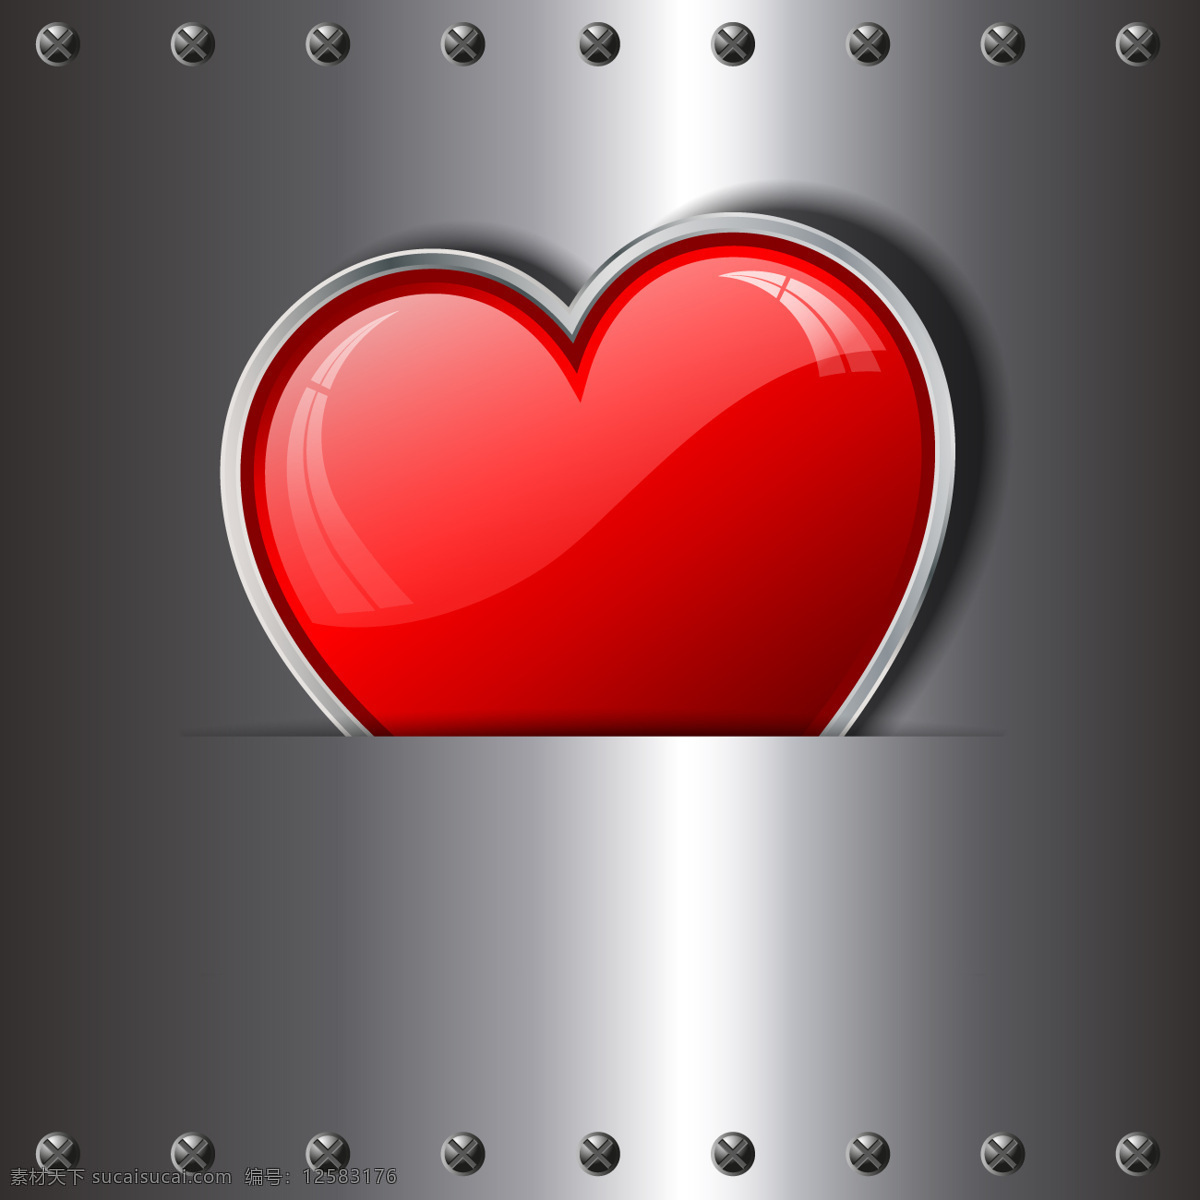 金属 背景 心脏 心 爱 情人节 庆典 夫妻 情人节的背景 浪漫 钢 铁 庆祝 美丽的一天 浪漫的背景 二月 灰色